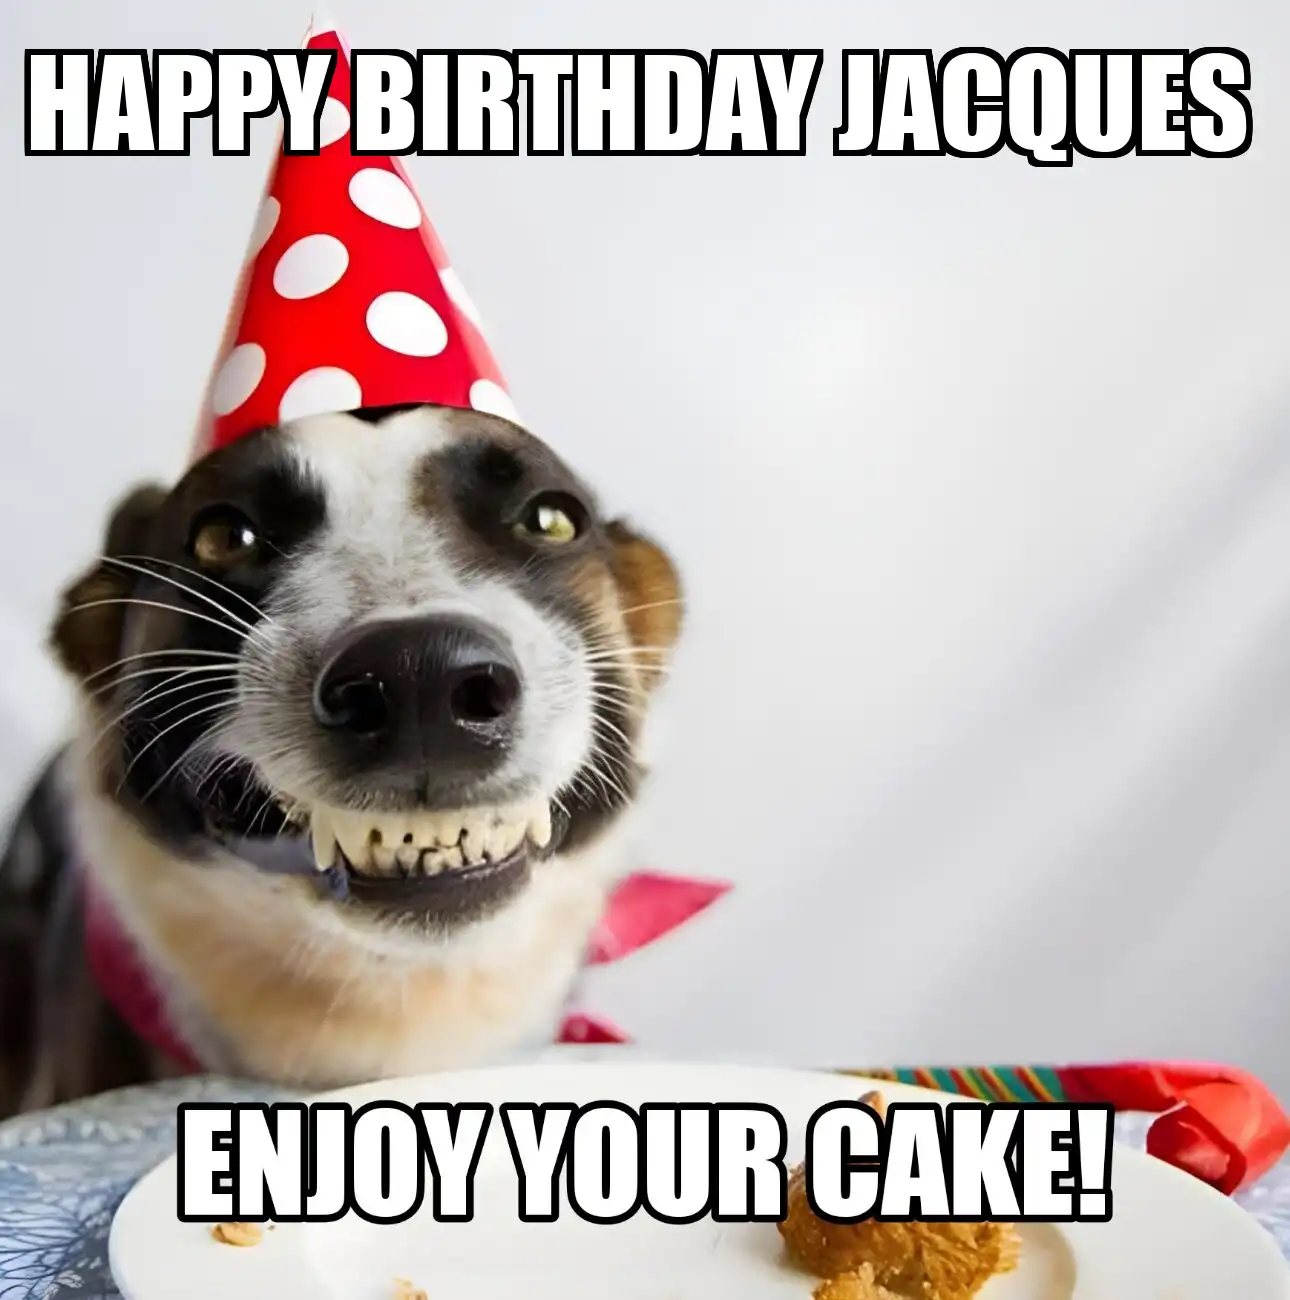 Happy Birthday Jacques Enjoy Your Cake Dog Meme